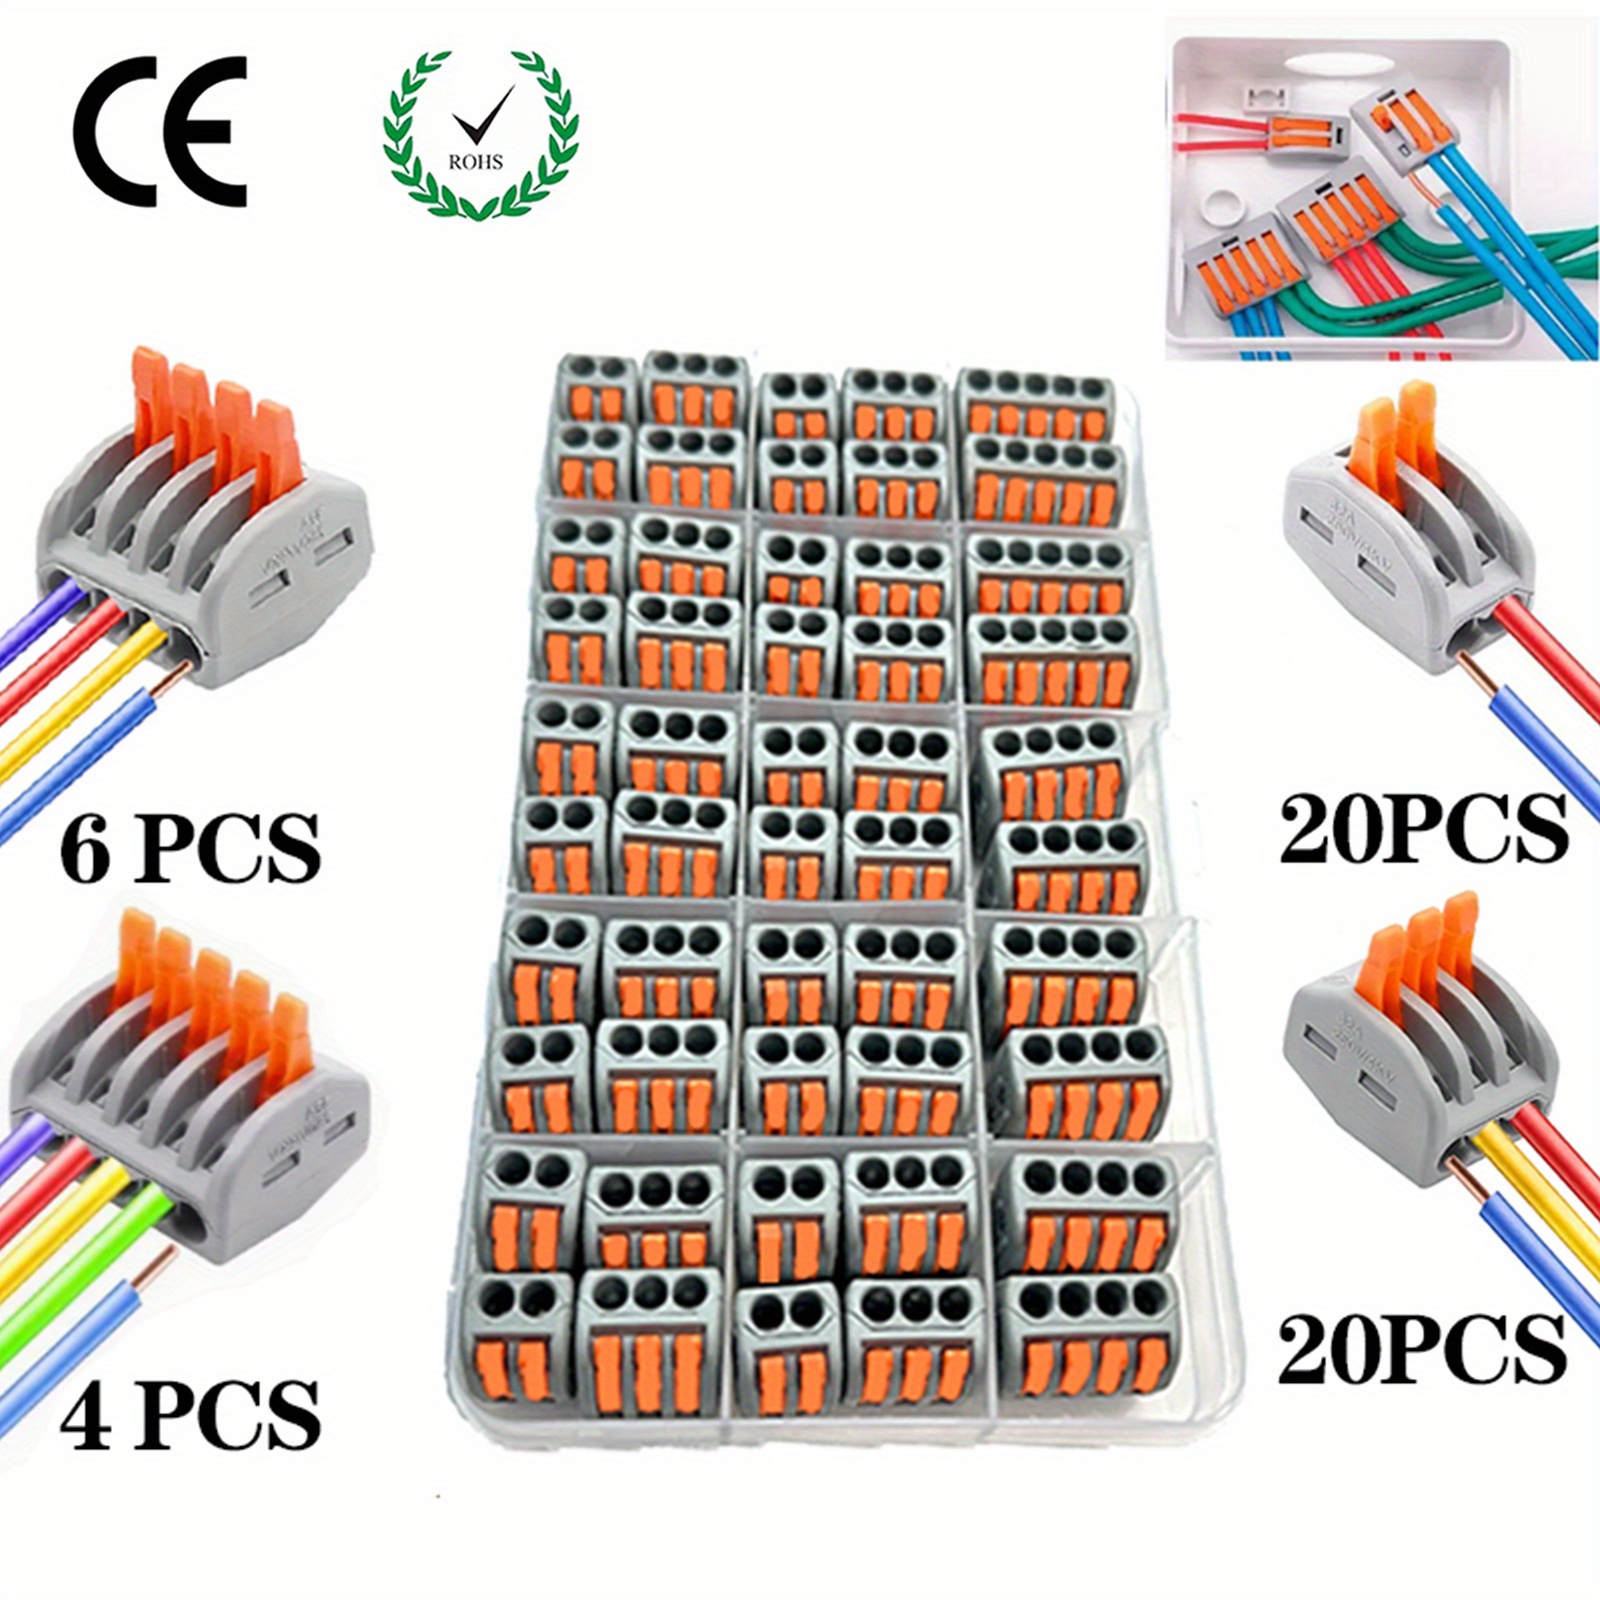 90 piezas de conectores compactos de conductor XHF, conectores de palanca,  tuercas, conectores eléctricos, terminales de cable para cualquier